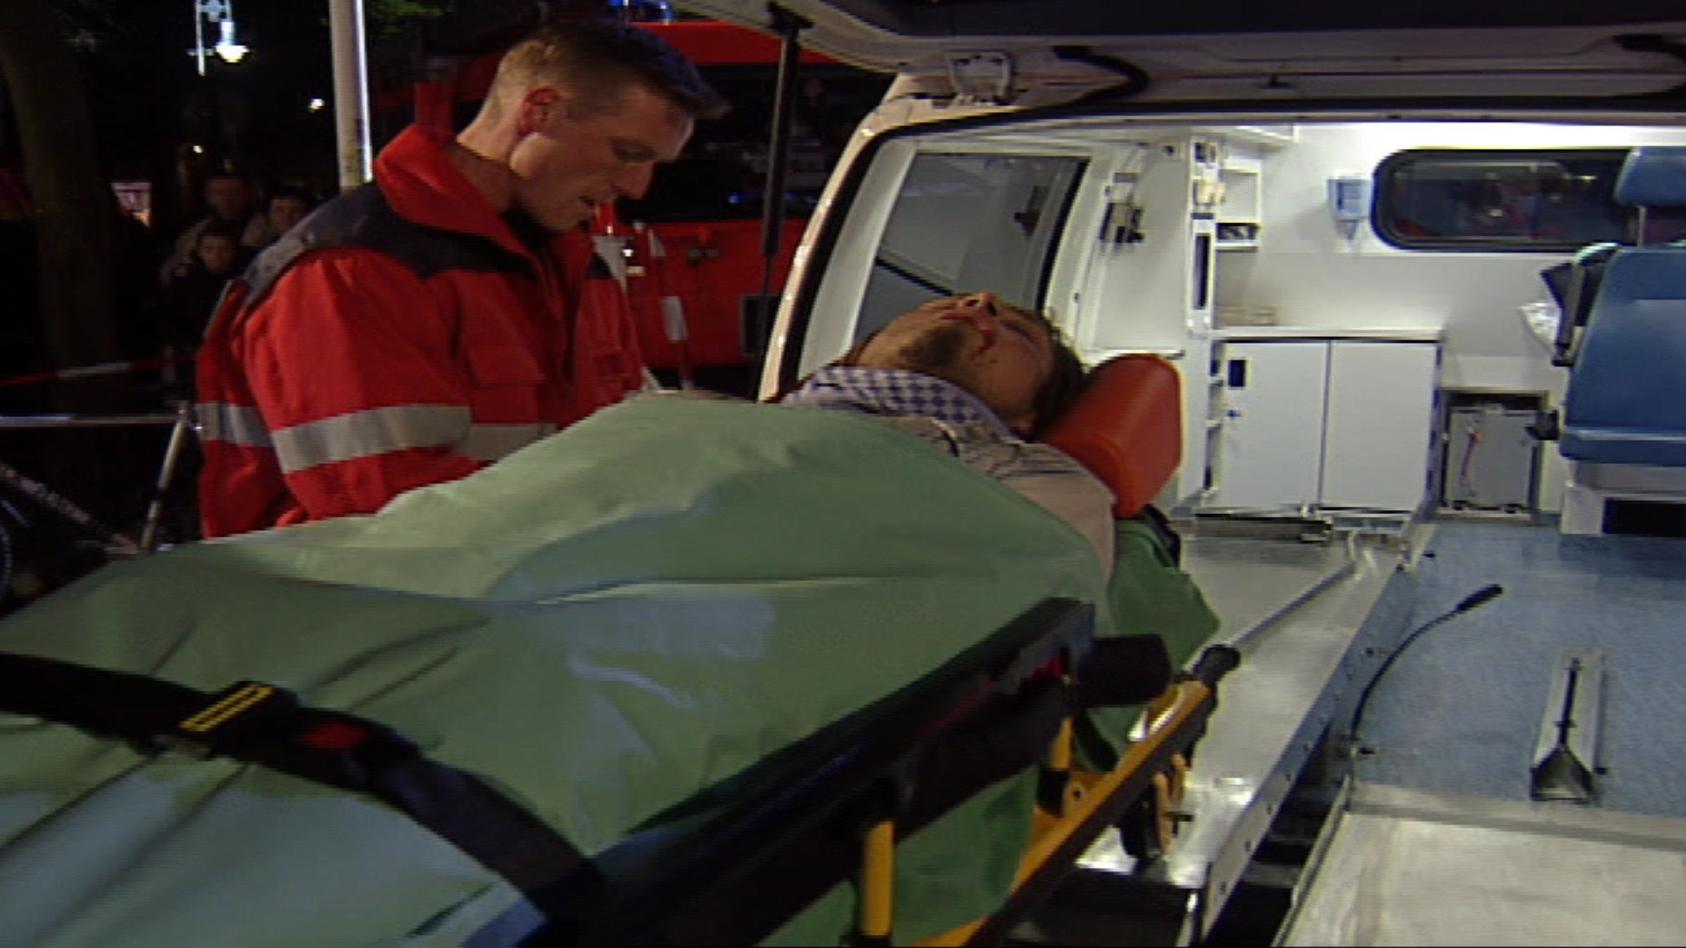 Kai wird auf einer Liege in ein Krankenwagen gebracht.